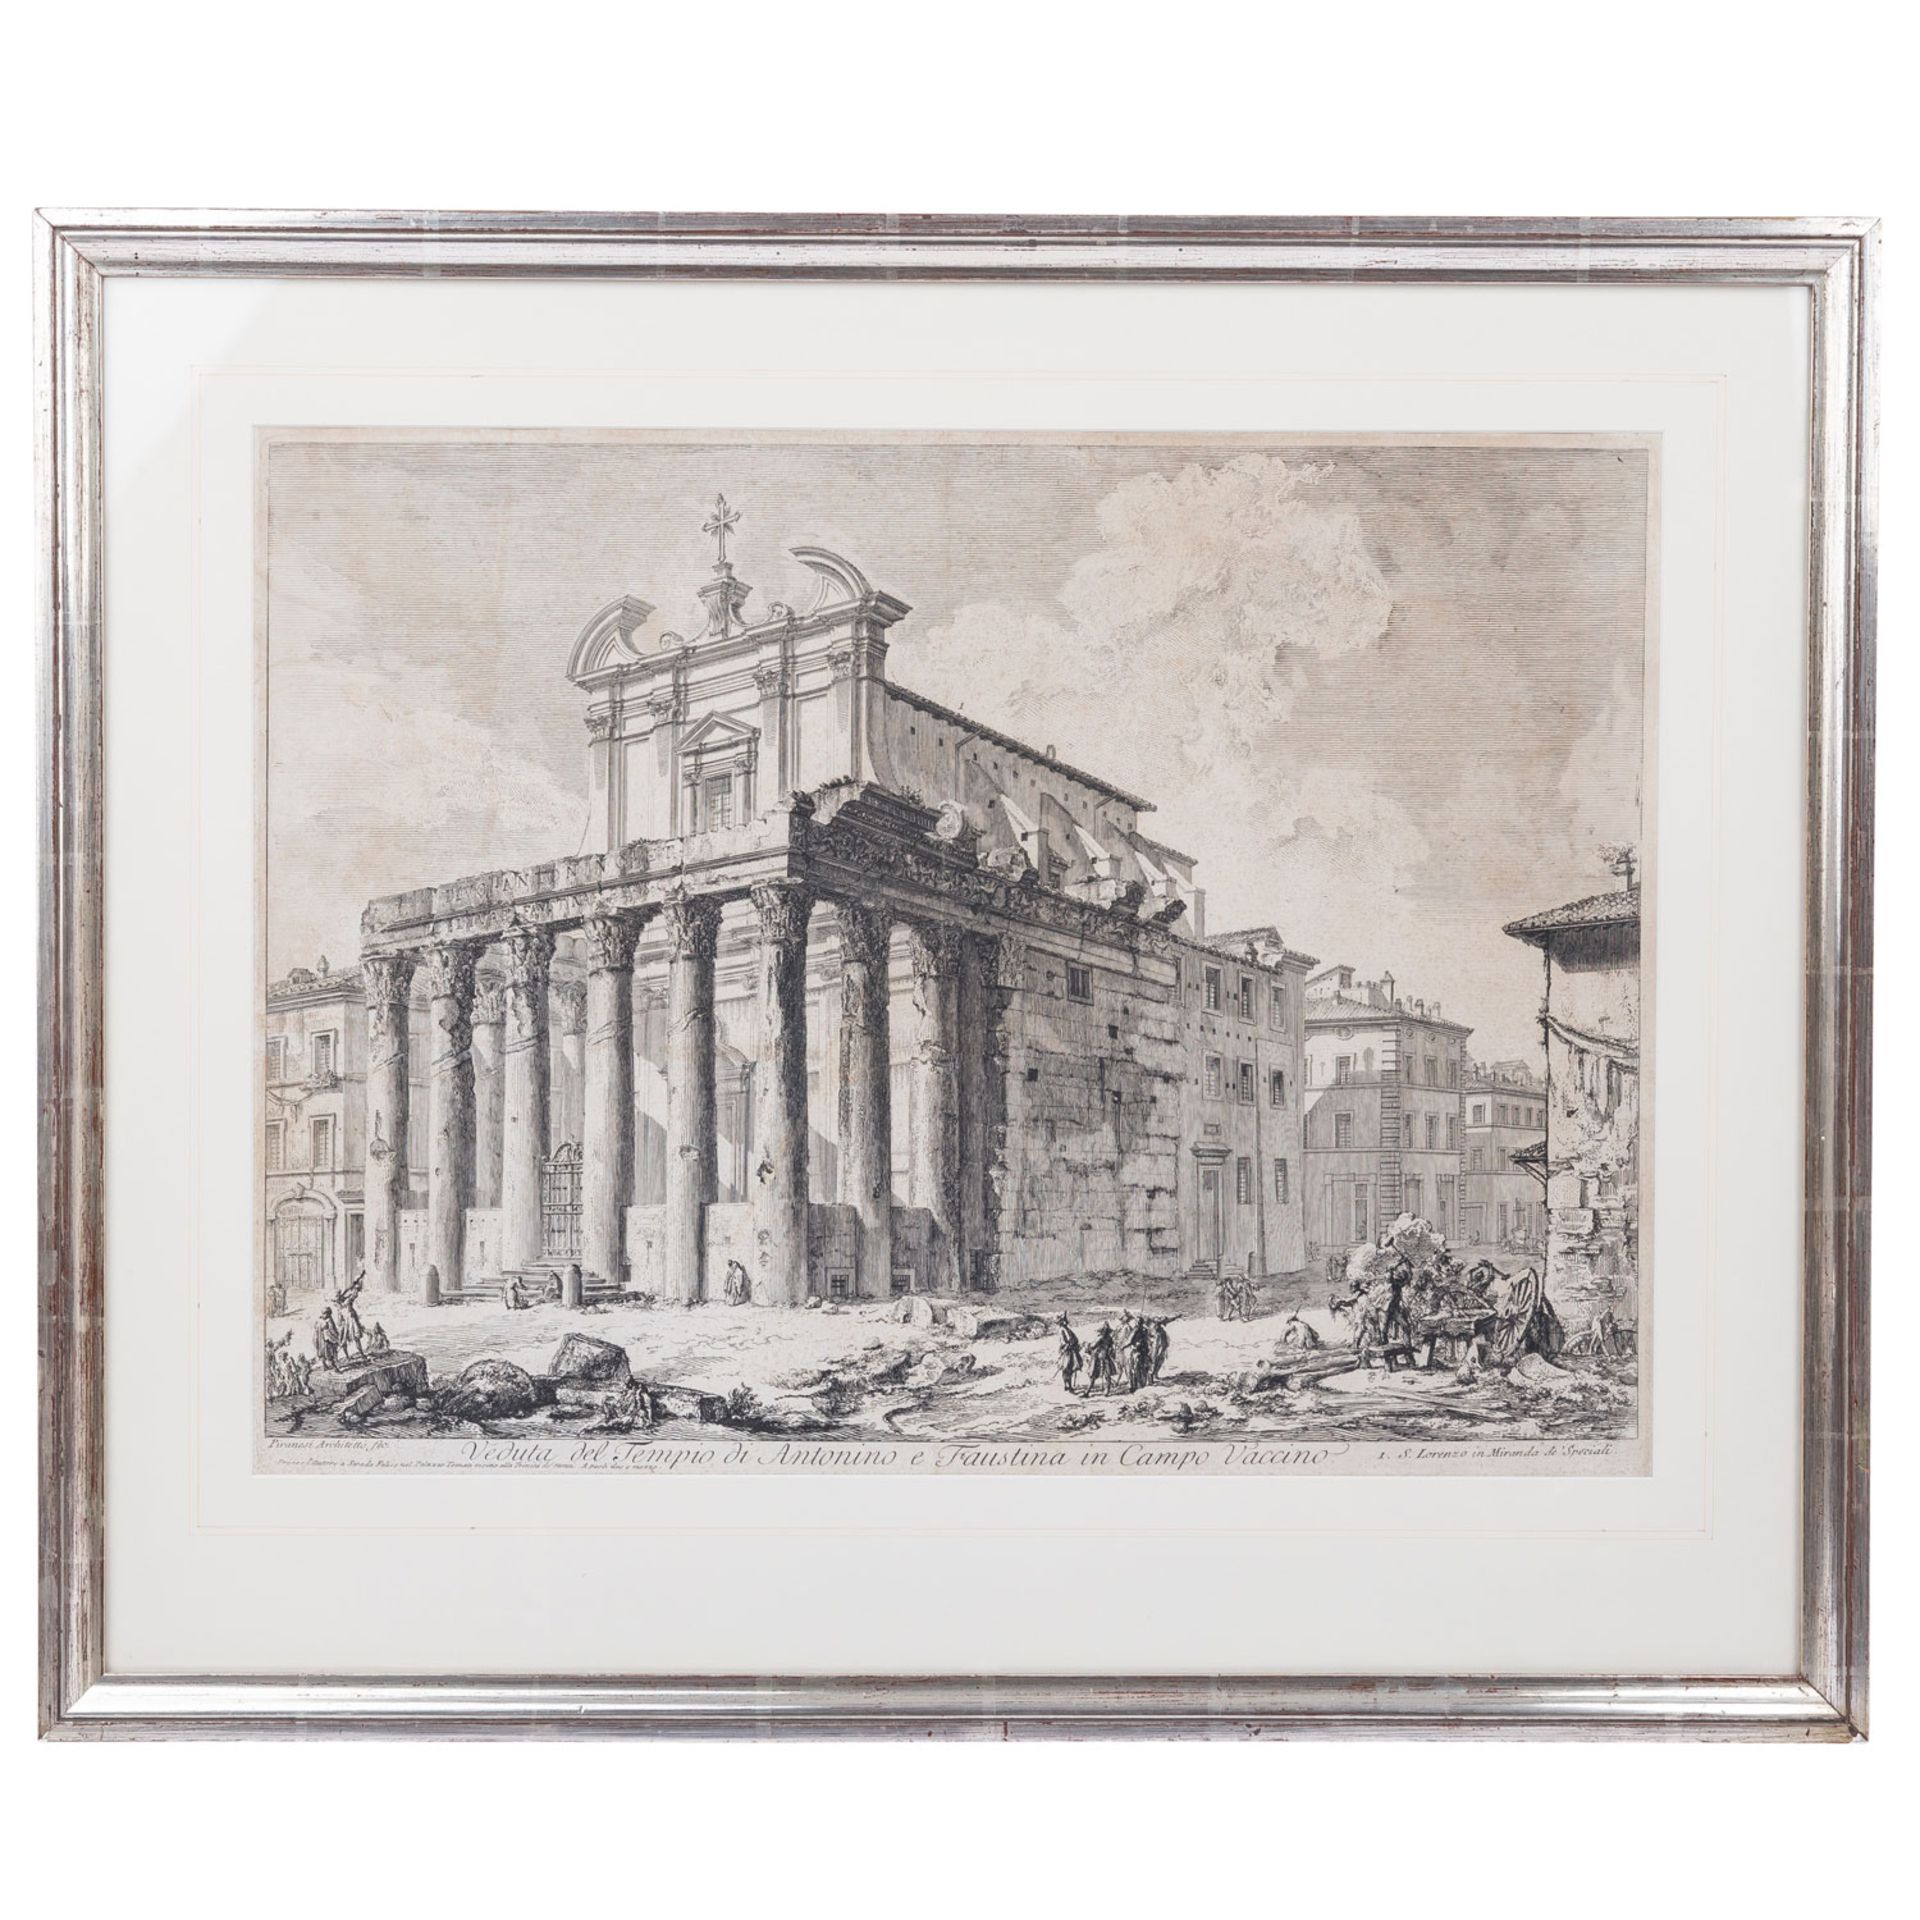 PIRANESI, GIOVANNI BATTISTA (1720-1778), "Veduta del Tempio di Antonino e Faustina in Campo Vaccino" - Bild 2 aus 7